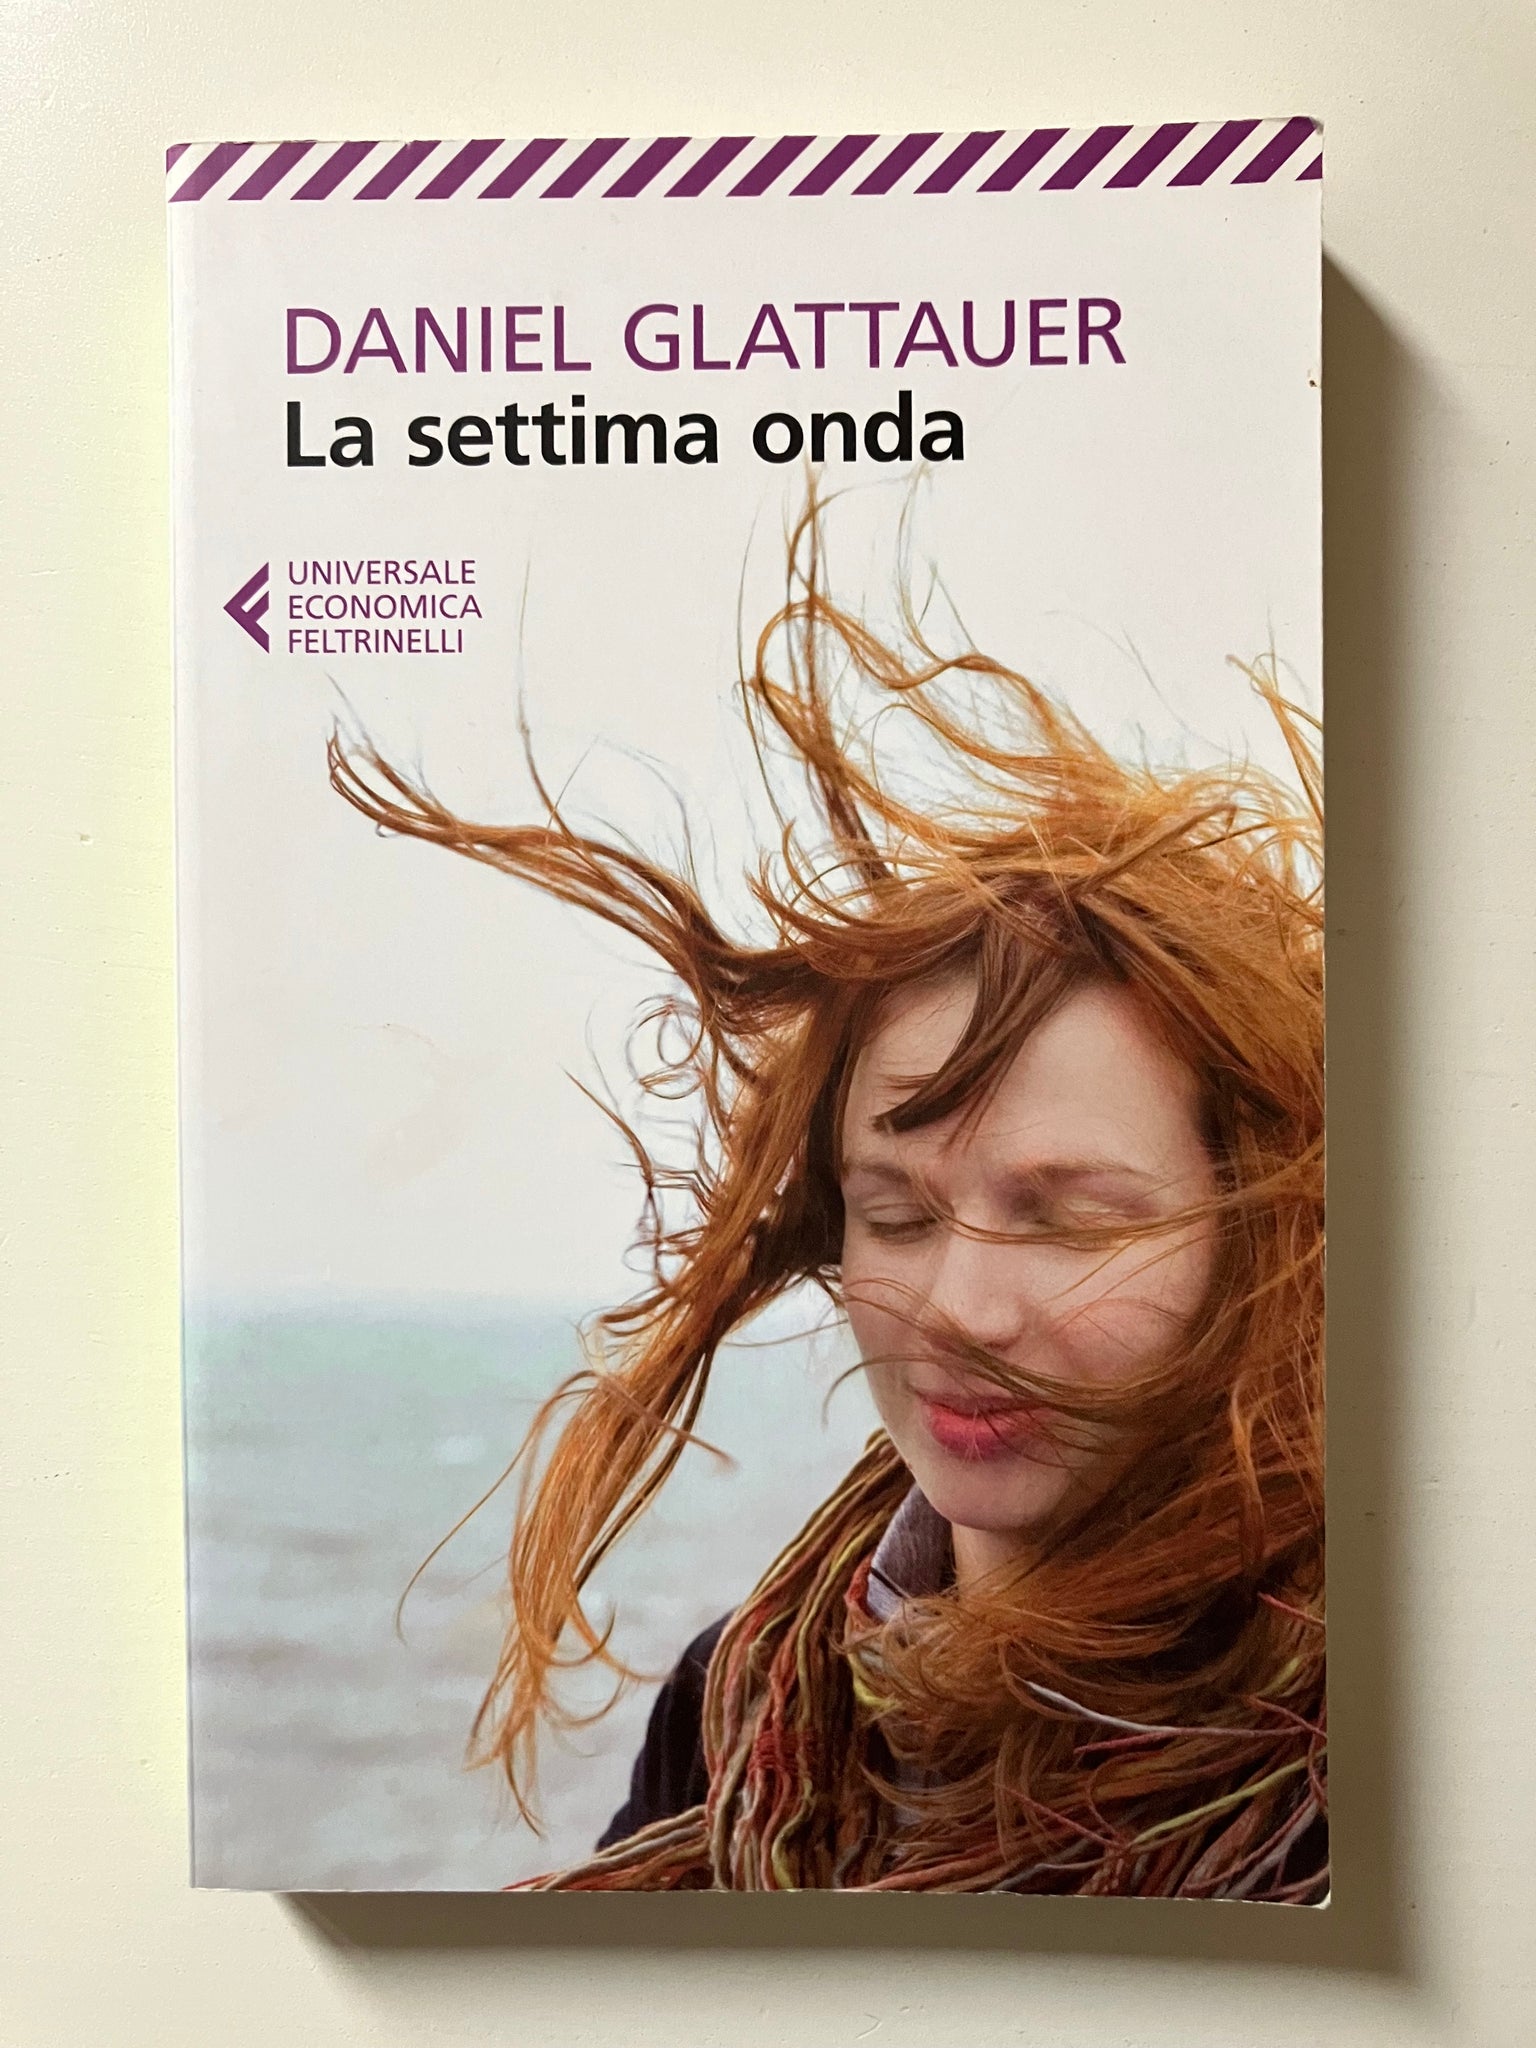 Daniel Glattauer - La settima onda